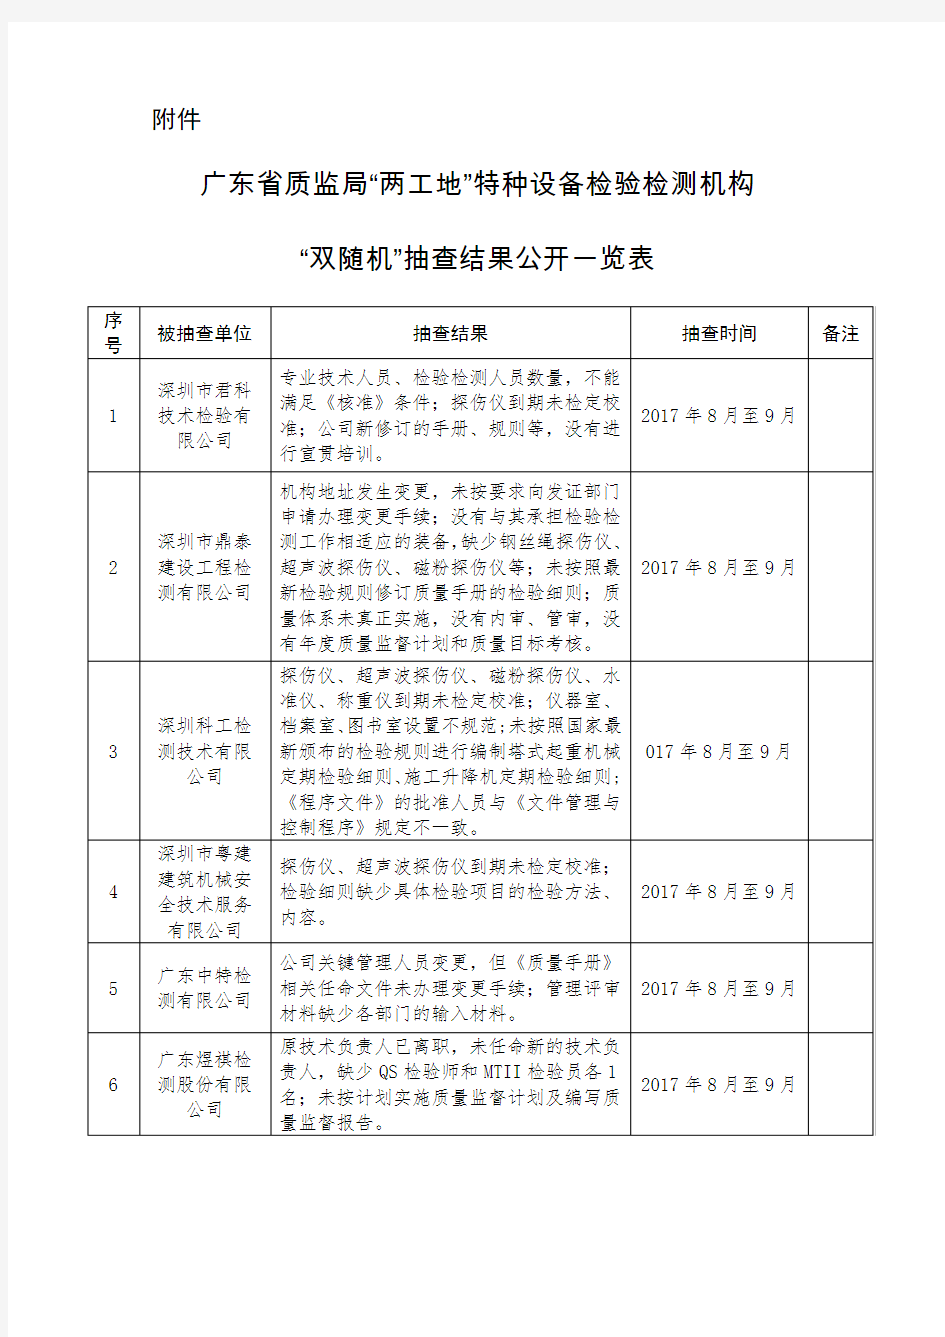 特种设备检验检测机构双随机抽查结果公开一览表-广东质量技术